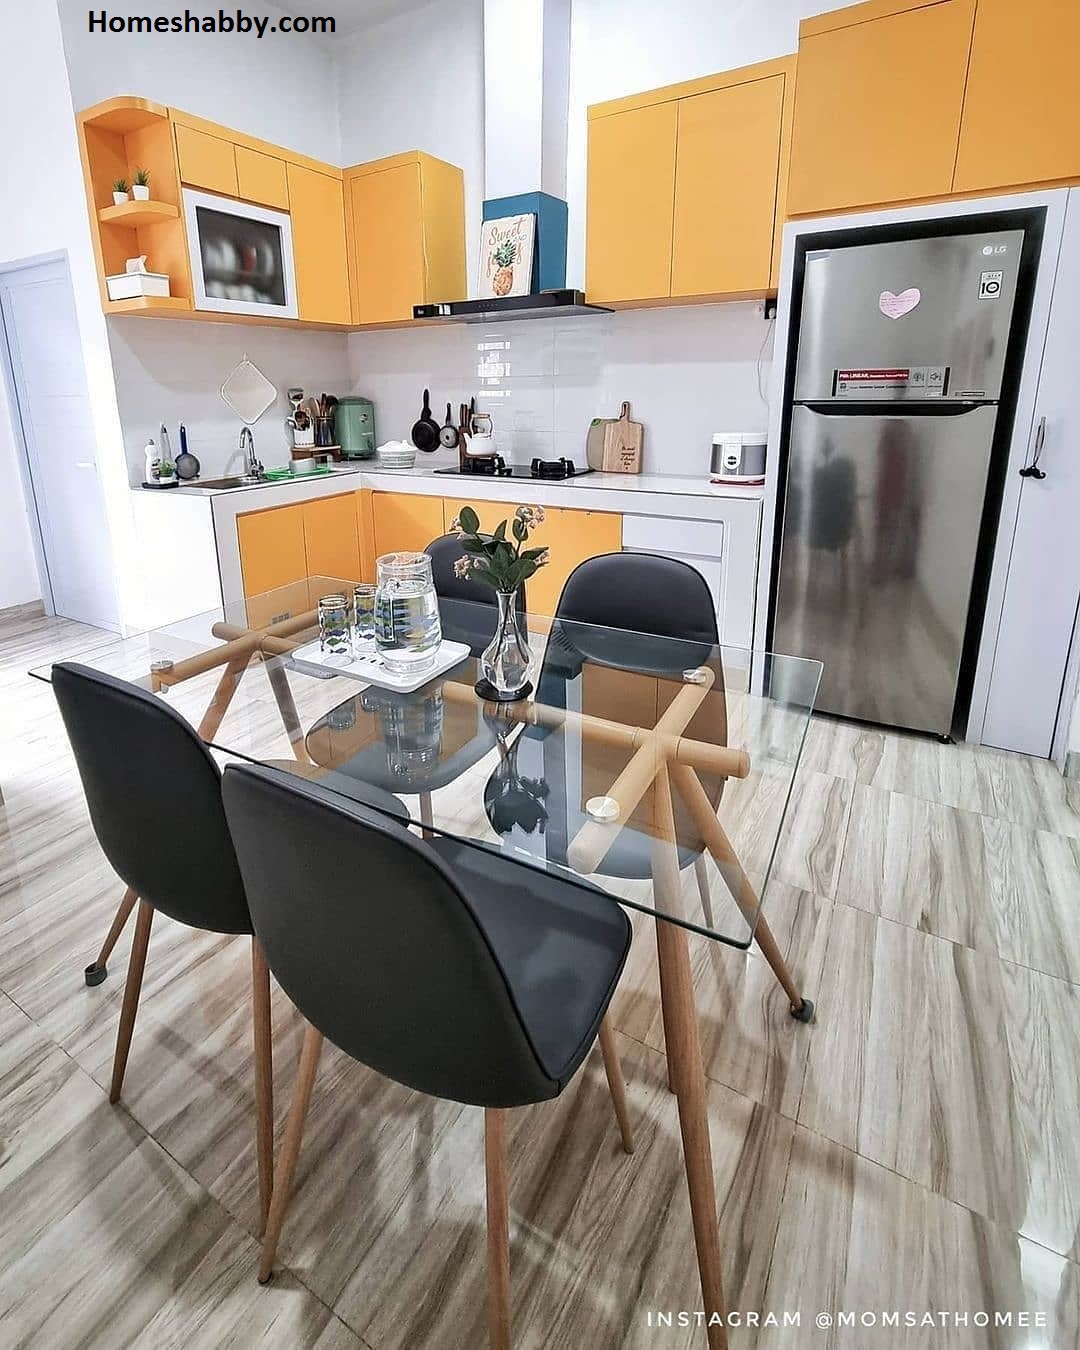 7 Ide Inspirasi Desain Dapur dan Ruang Makan Minimalis ~ Homeshabby.com